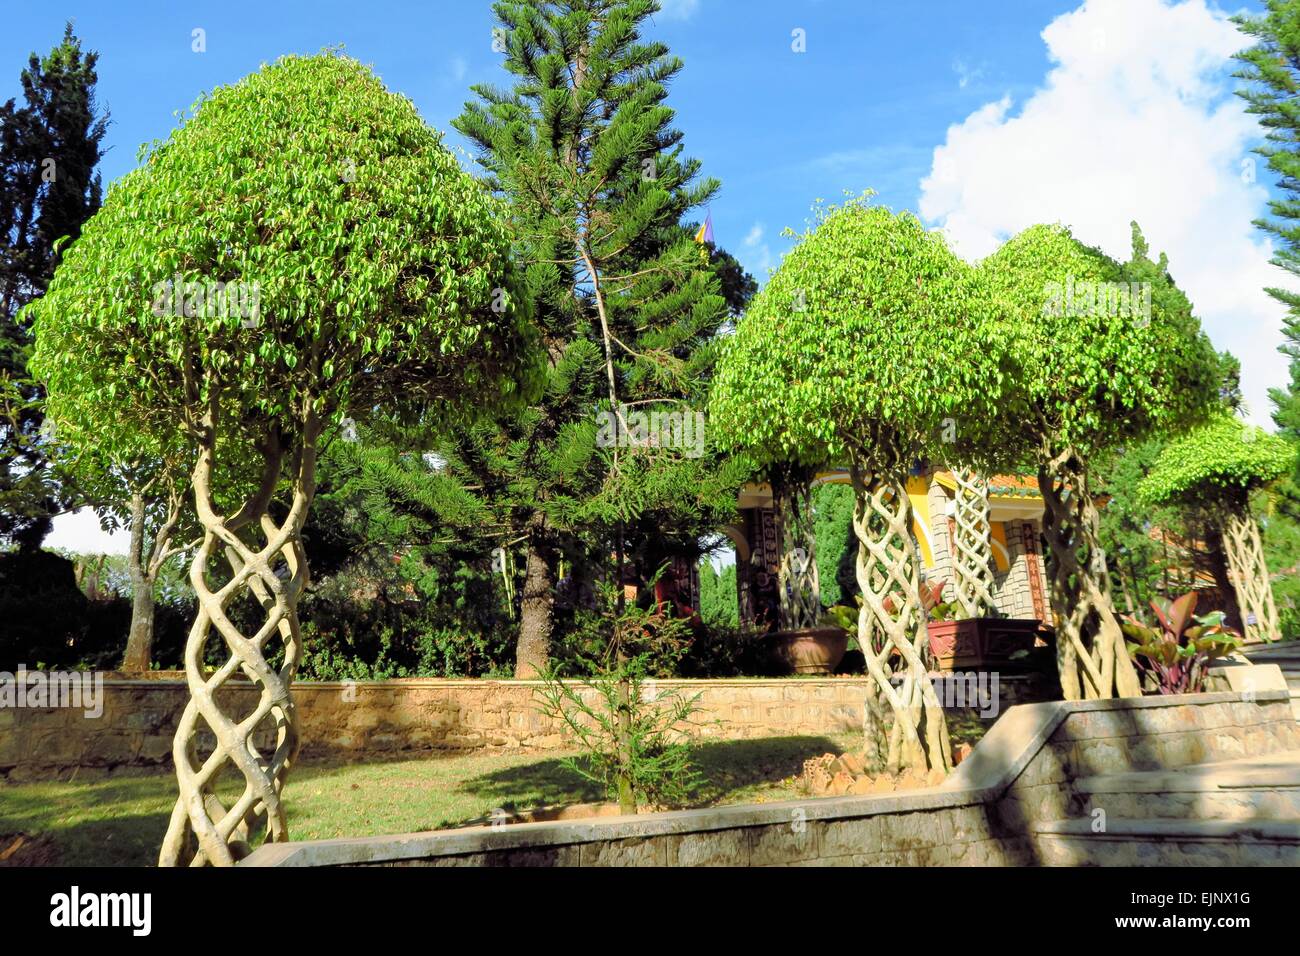 Bäume mit Ästen verflochten als Helix im Garten Stockfoto